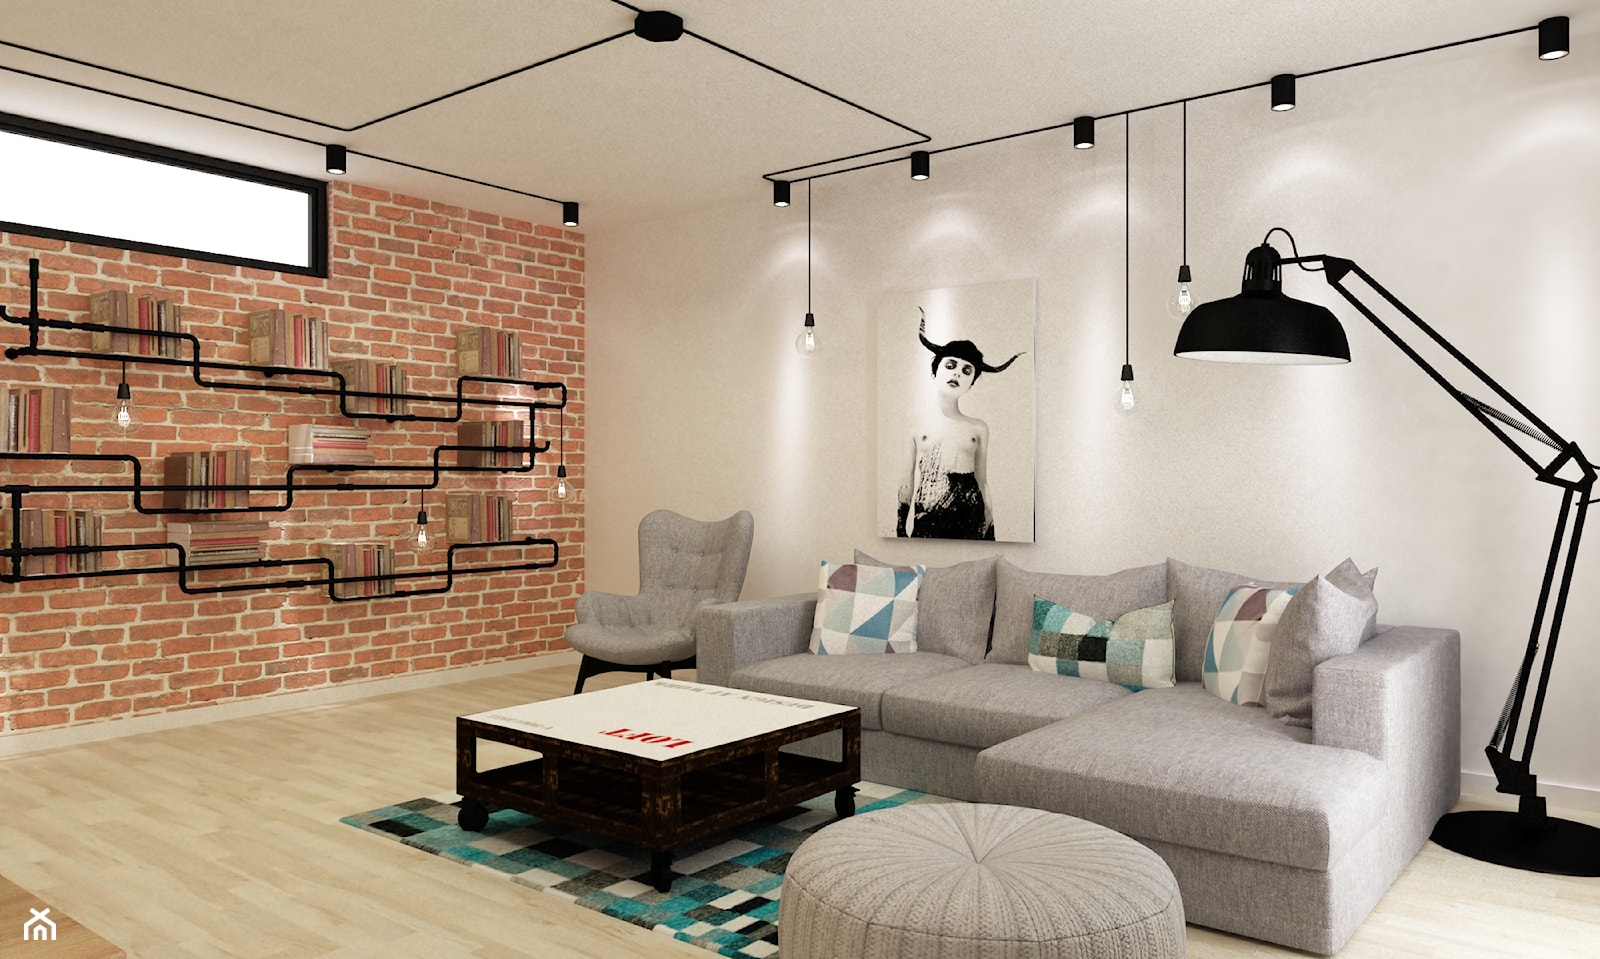 Apartament w Warszawie 90 m2 starzona cegła styl industrialny loft - Średni biały czerwony salon, s ... - zdjęcie od Grafika i Projekt architektura wnętrz - Homebook